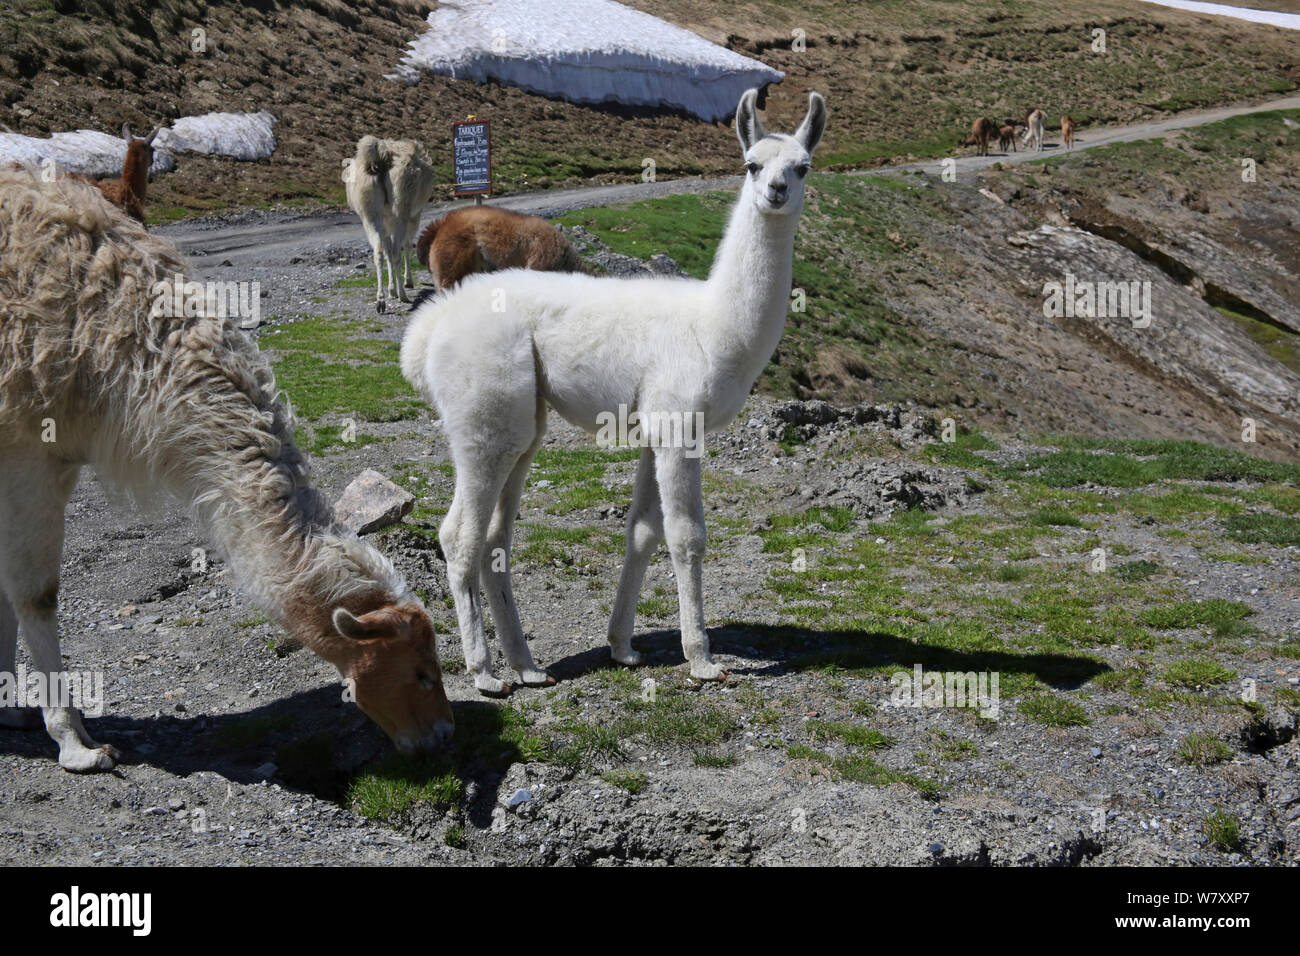 Jeune lama (Lama glama) Pyrénées françaises, France, juillet. Banque D'Images